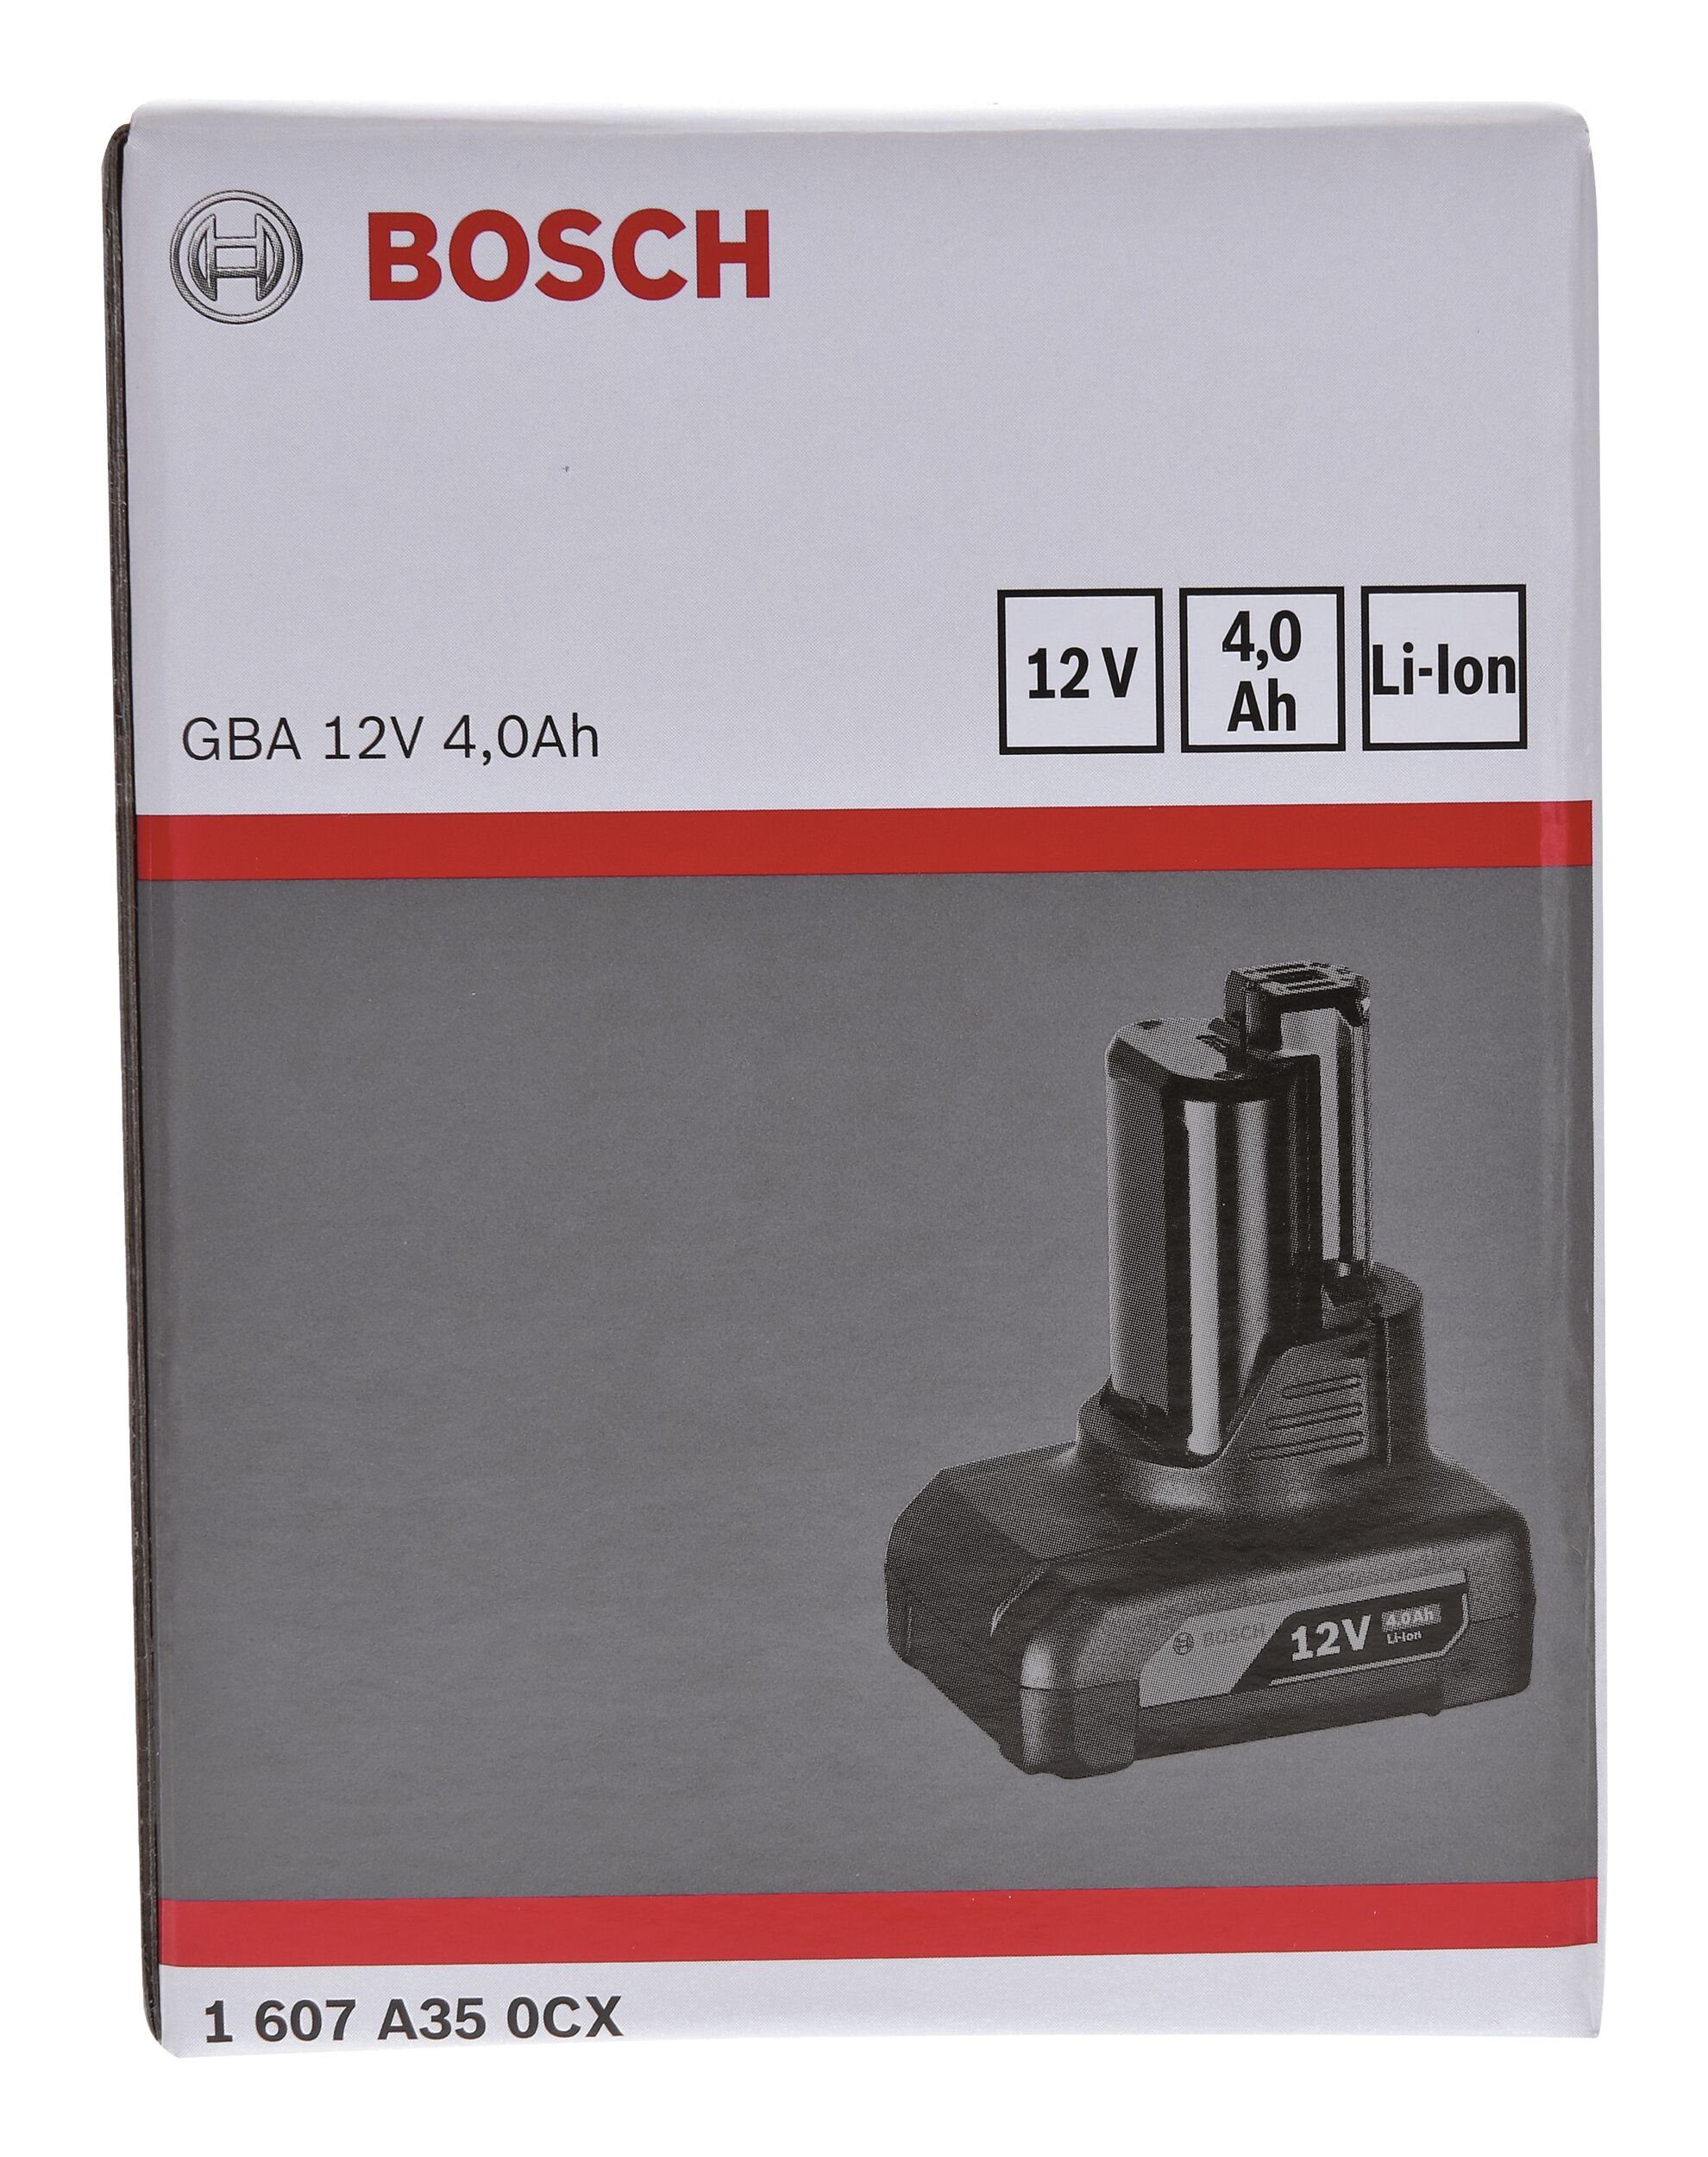 Bosch Home & Garden Akkupacks, 4 12 / V Ah GBA Einschubakkupack